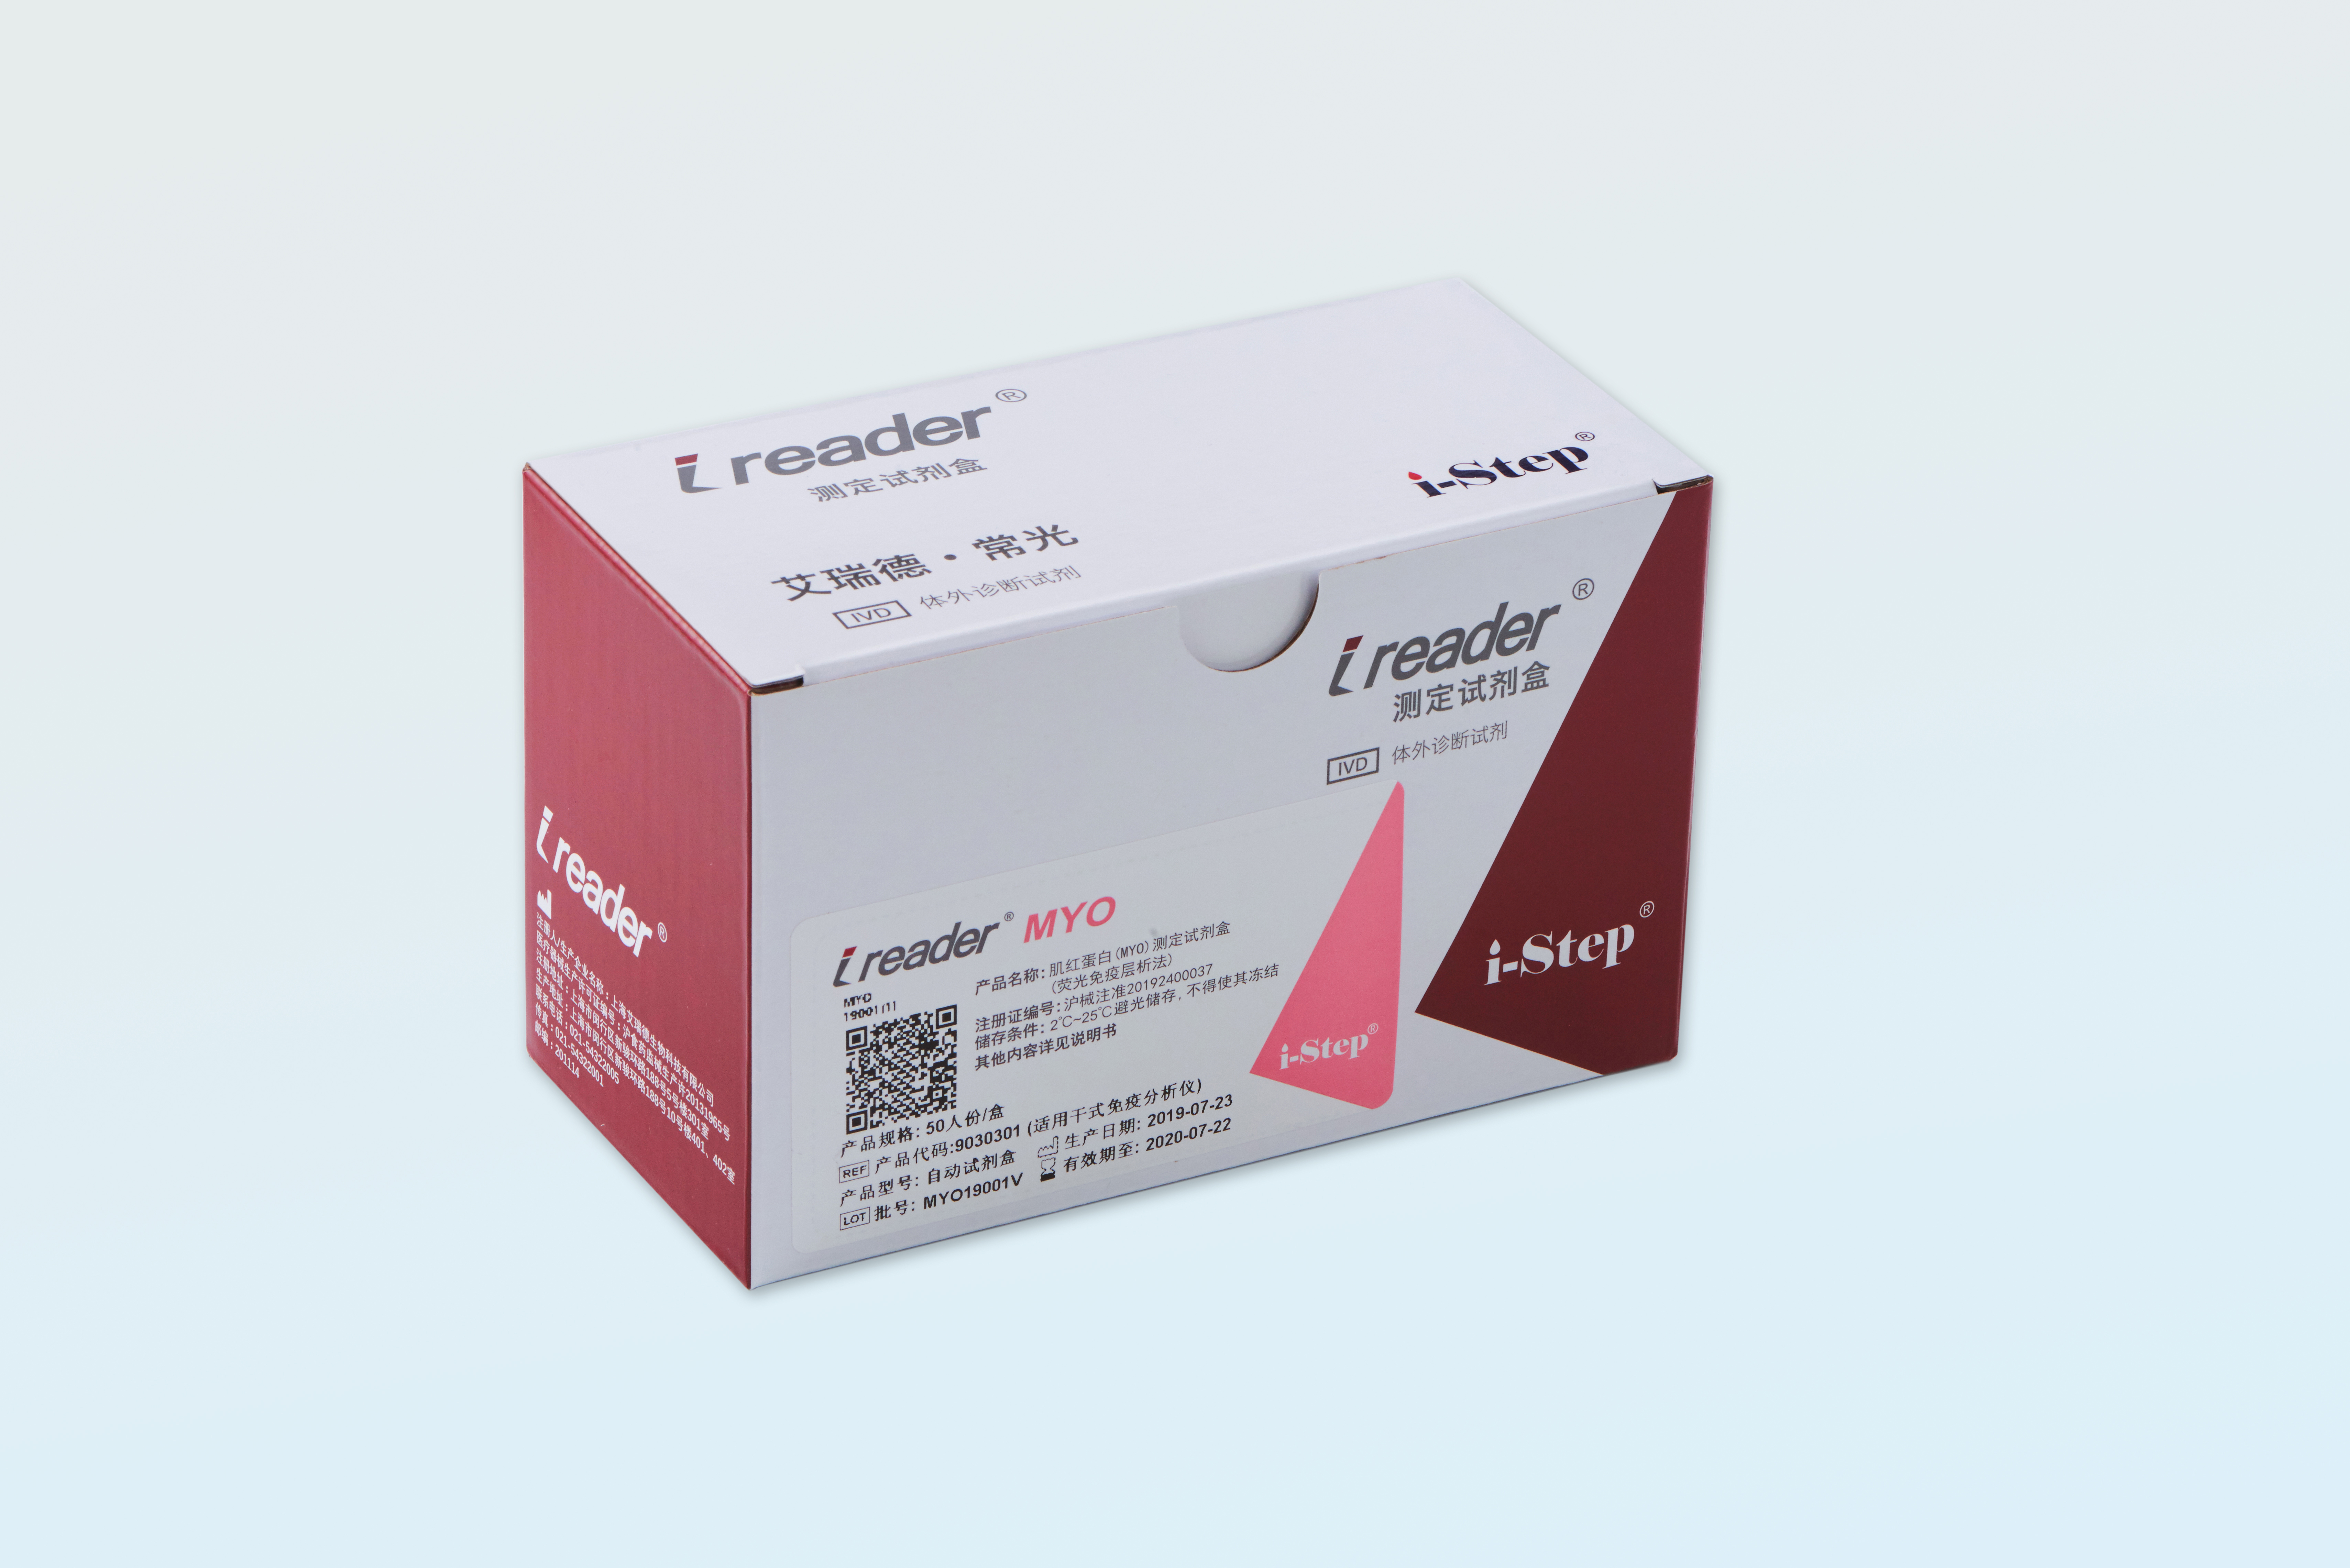 【艾瑞德】肌红蛋白(MYO)测定试剂盒(荧光免疫层析法)